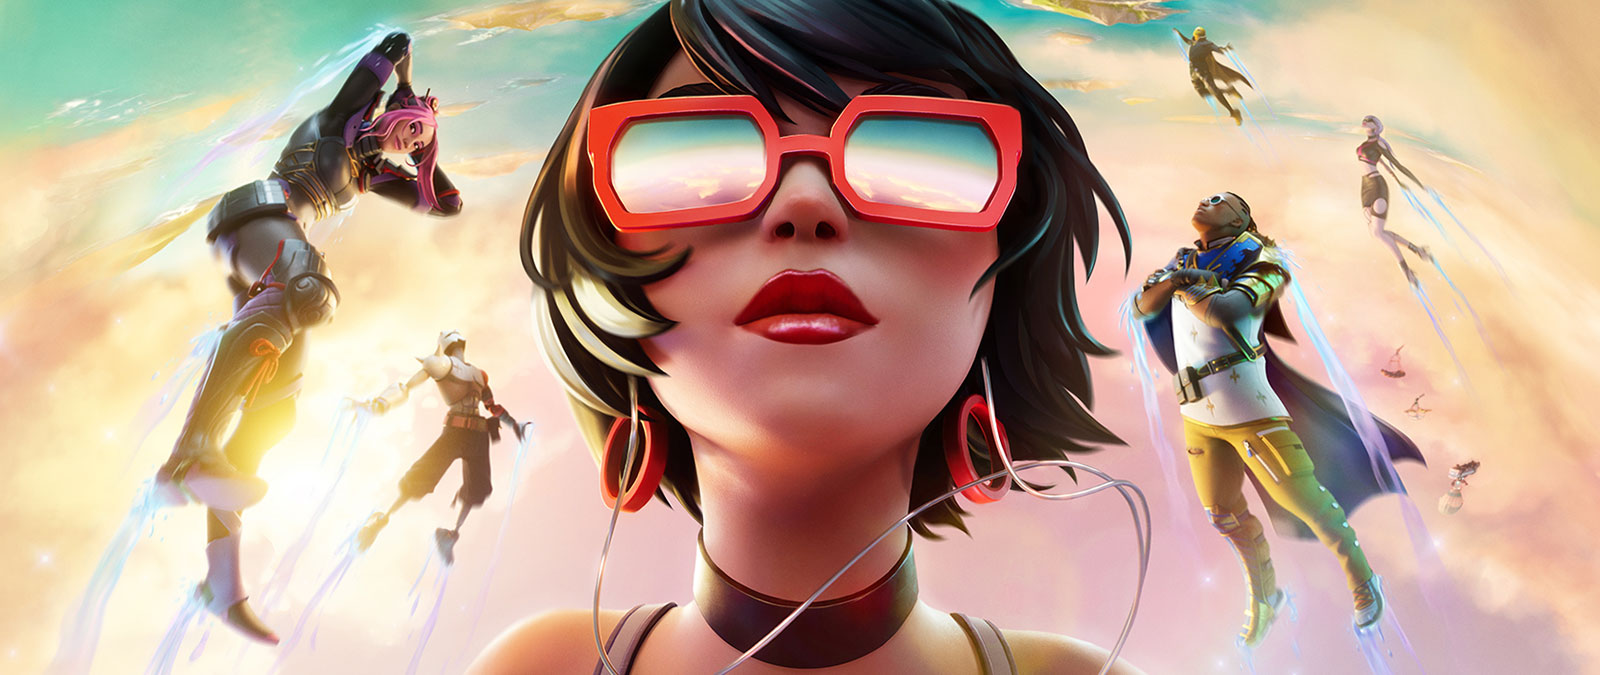 Een meisje met een rode zonnebril zweeft in de wolken met andere personages tegen een pastelkleurige lucht.